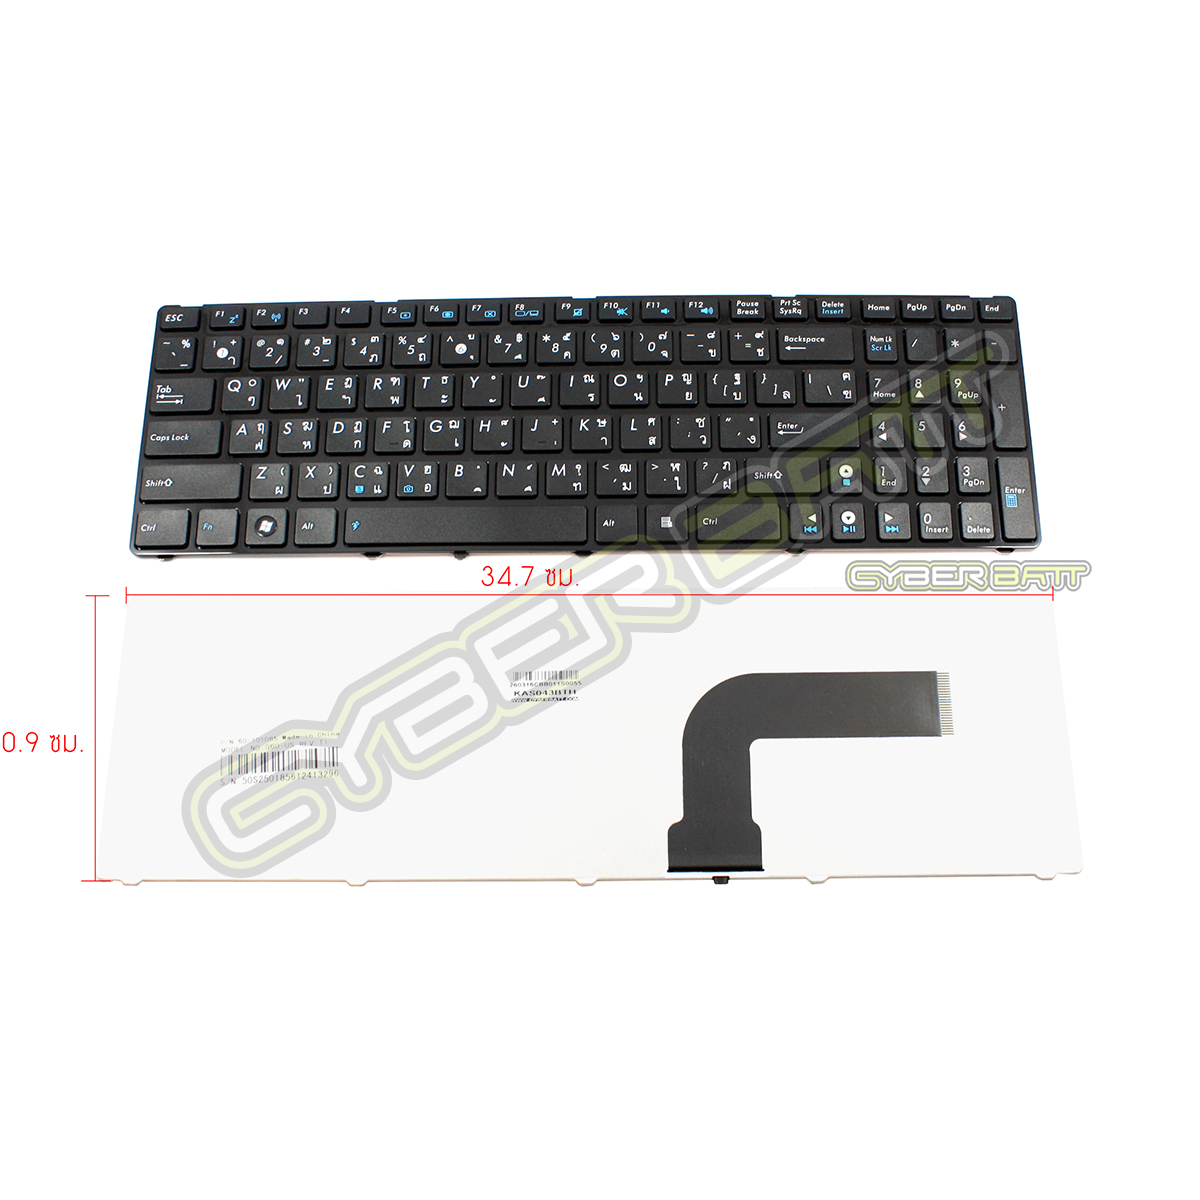 Keyboard Asus G60/K52 Black TH 